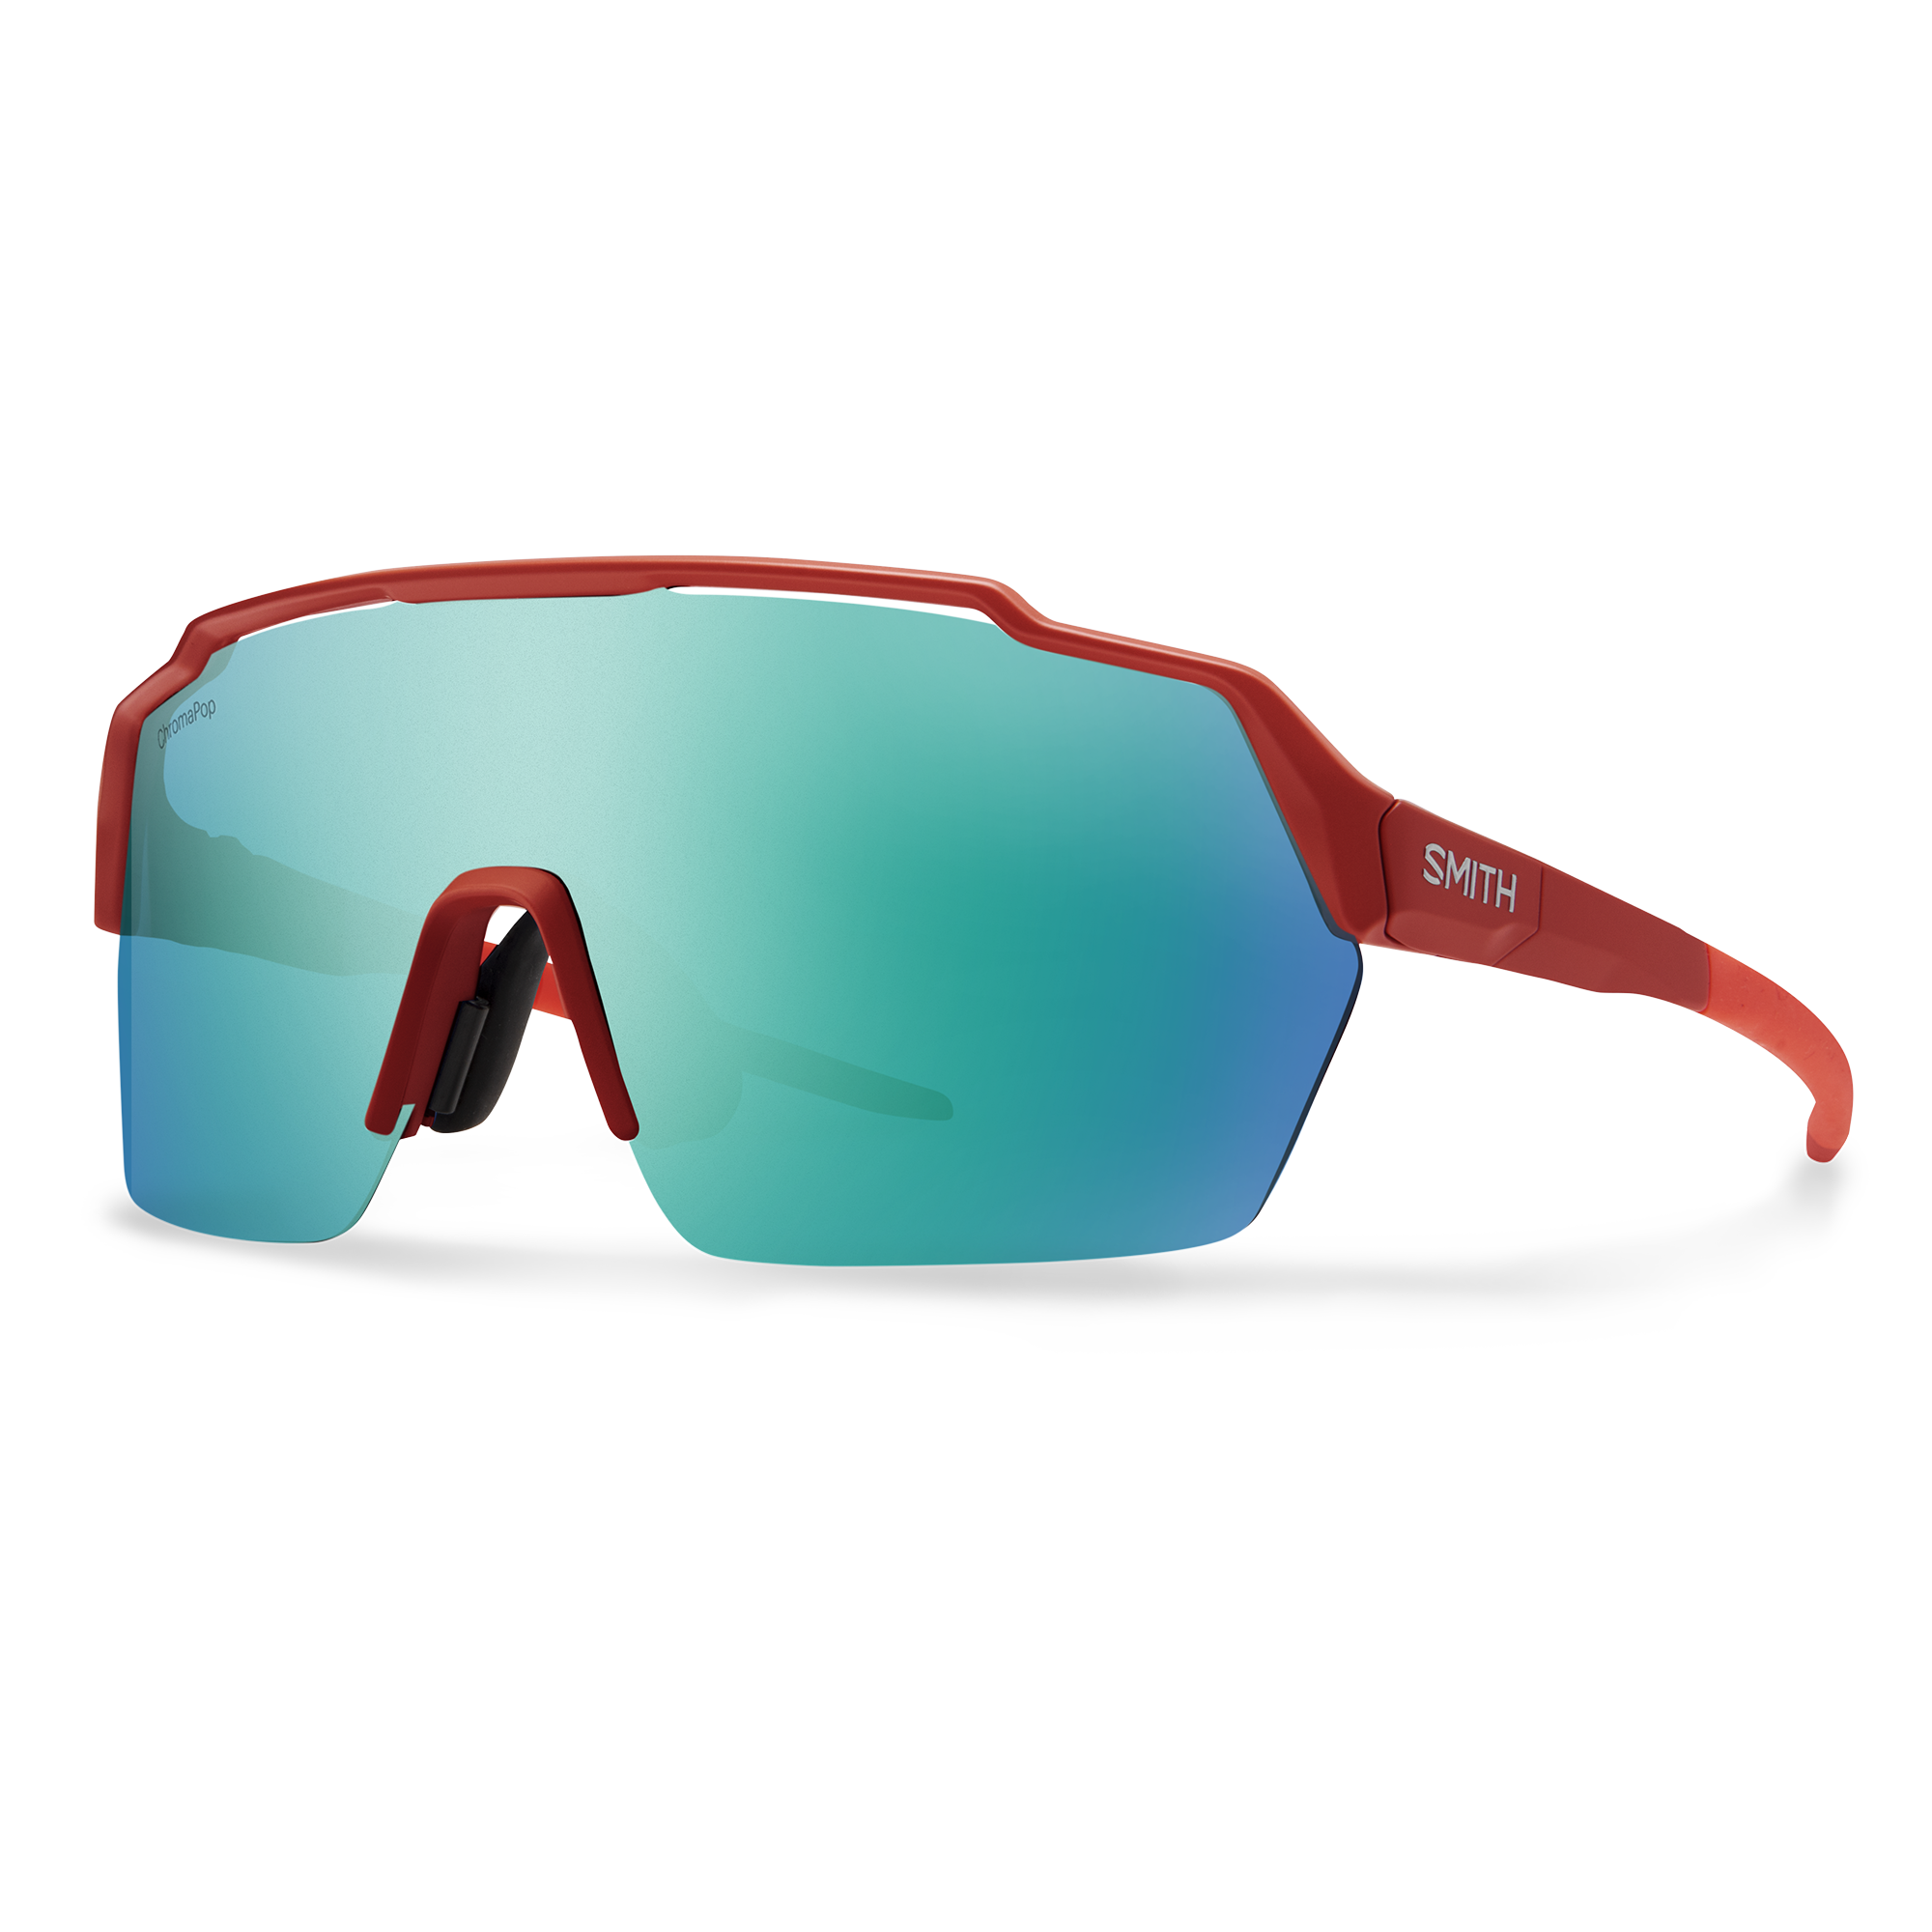 Smith Shift Split MAG Mountain Bike Sunglasses - PRFO Sports